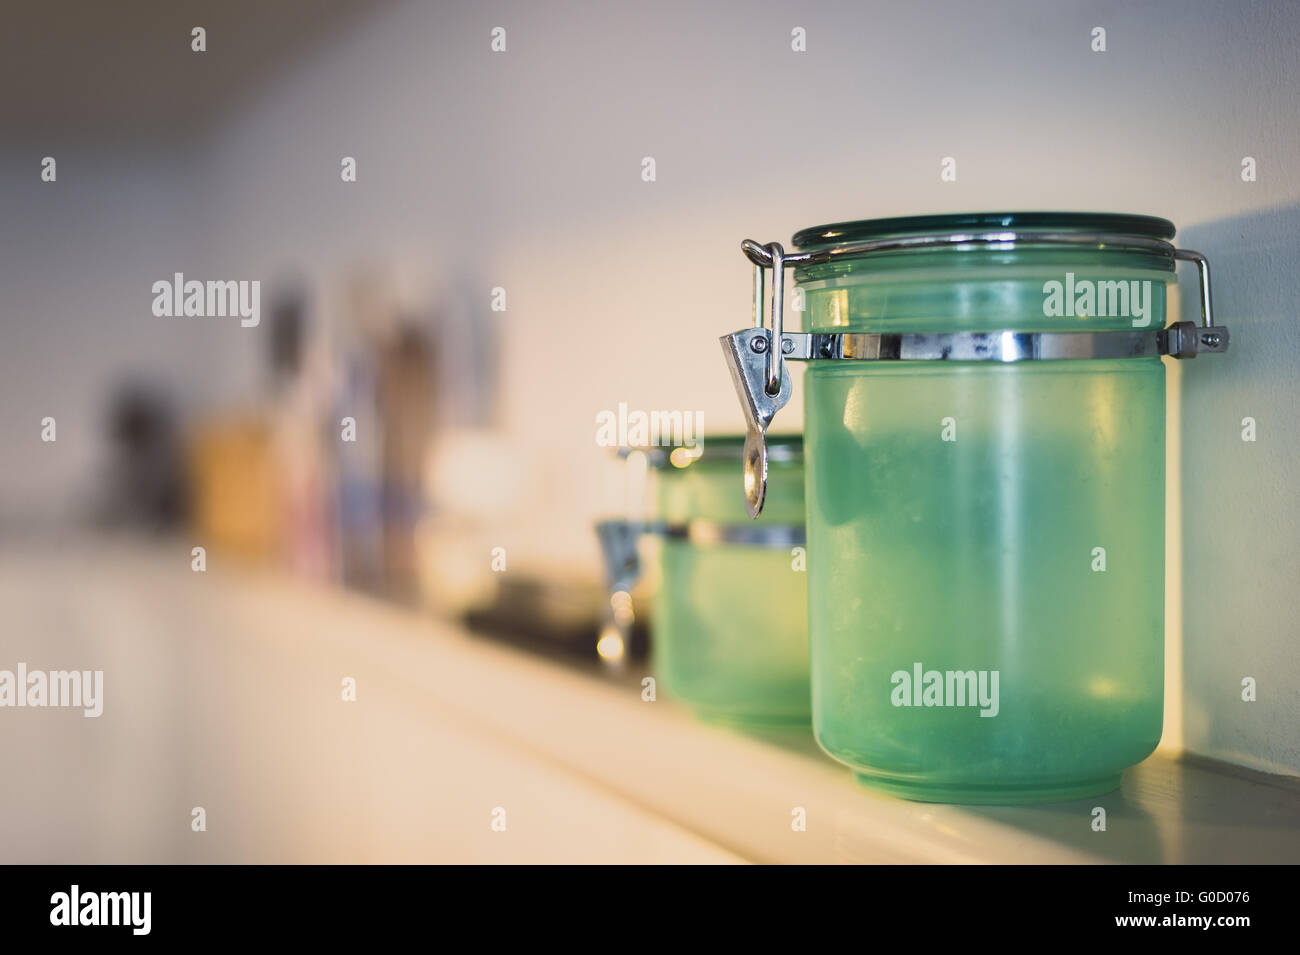 Vetro verde per recipiente di contenimento sono a mensola a muro Foto Stock